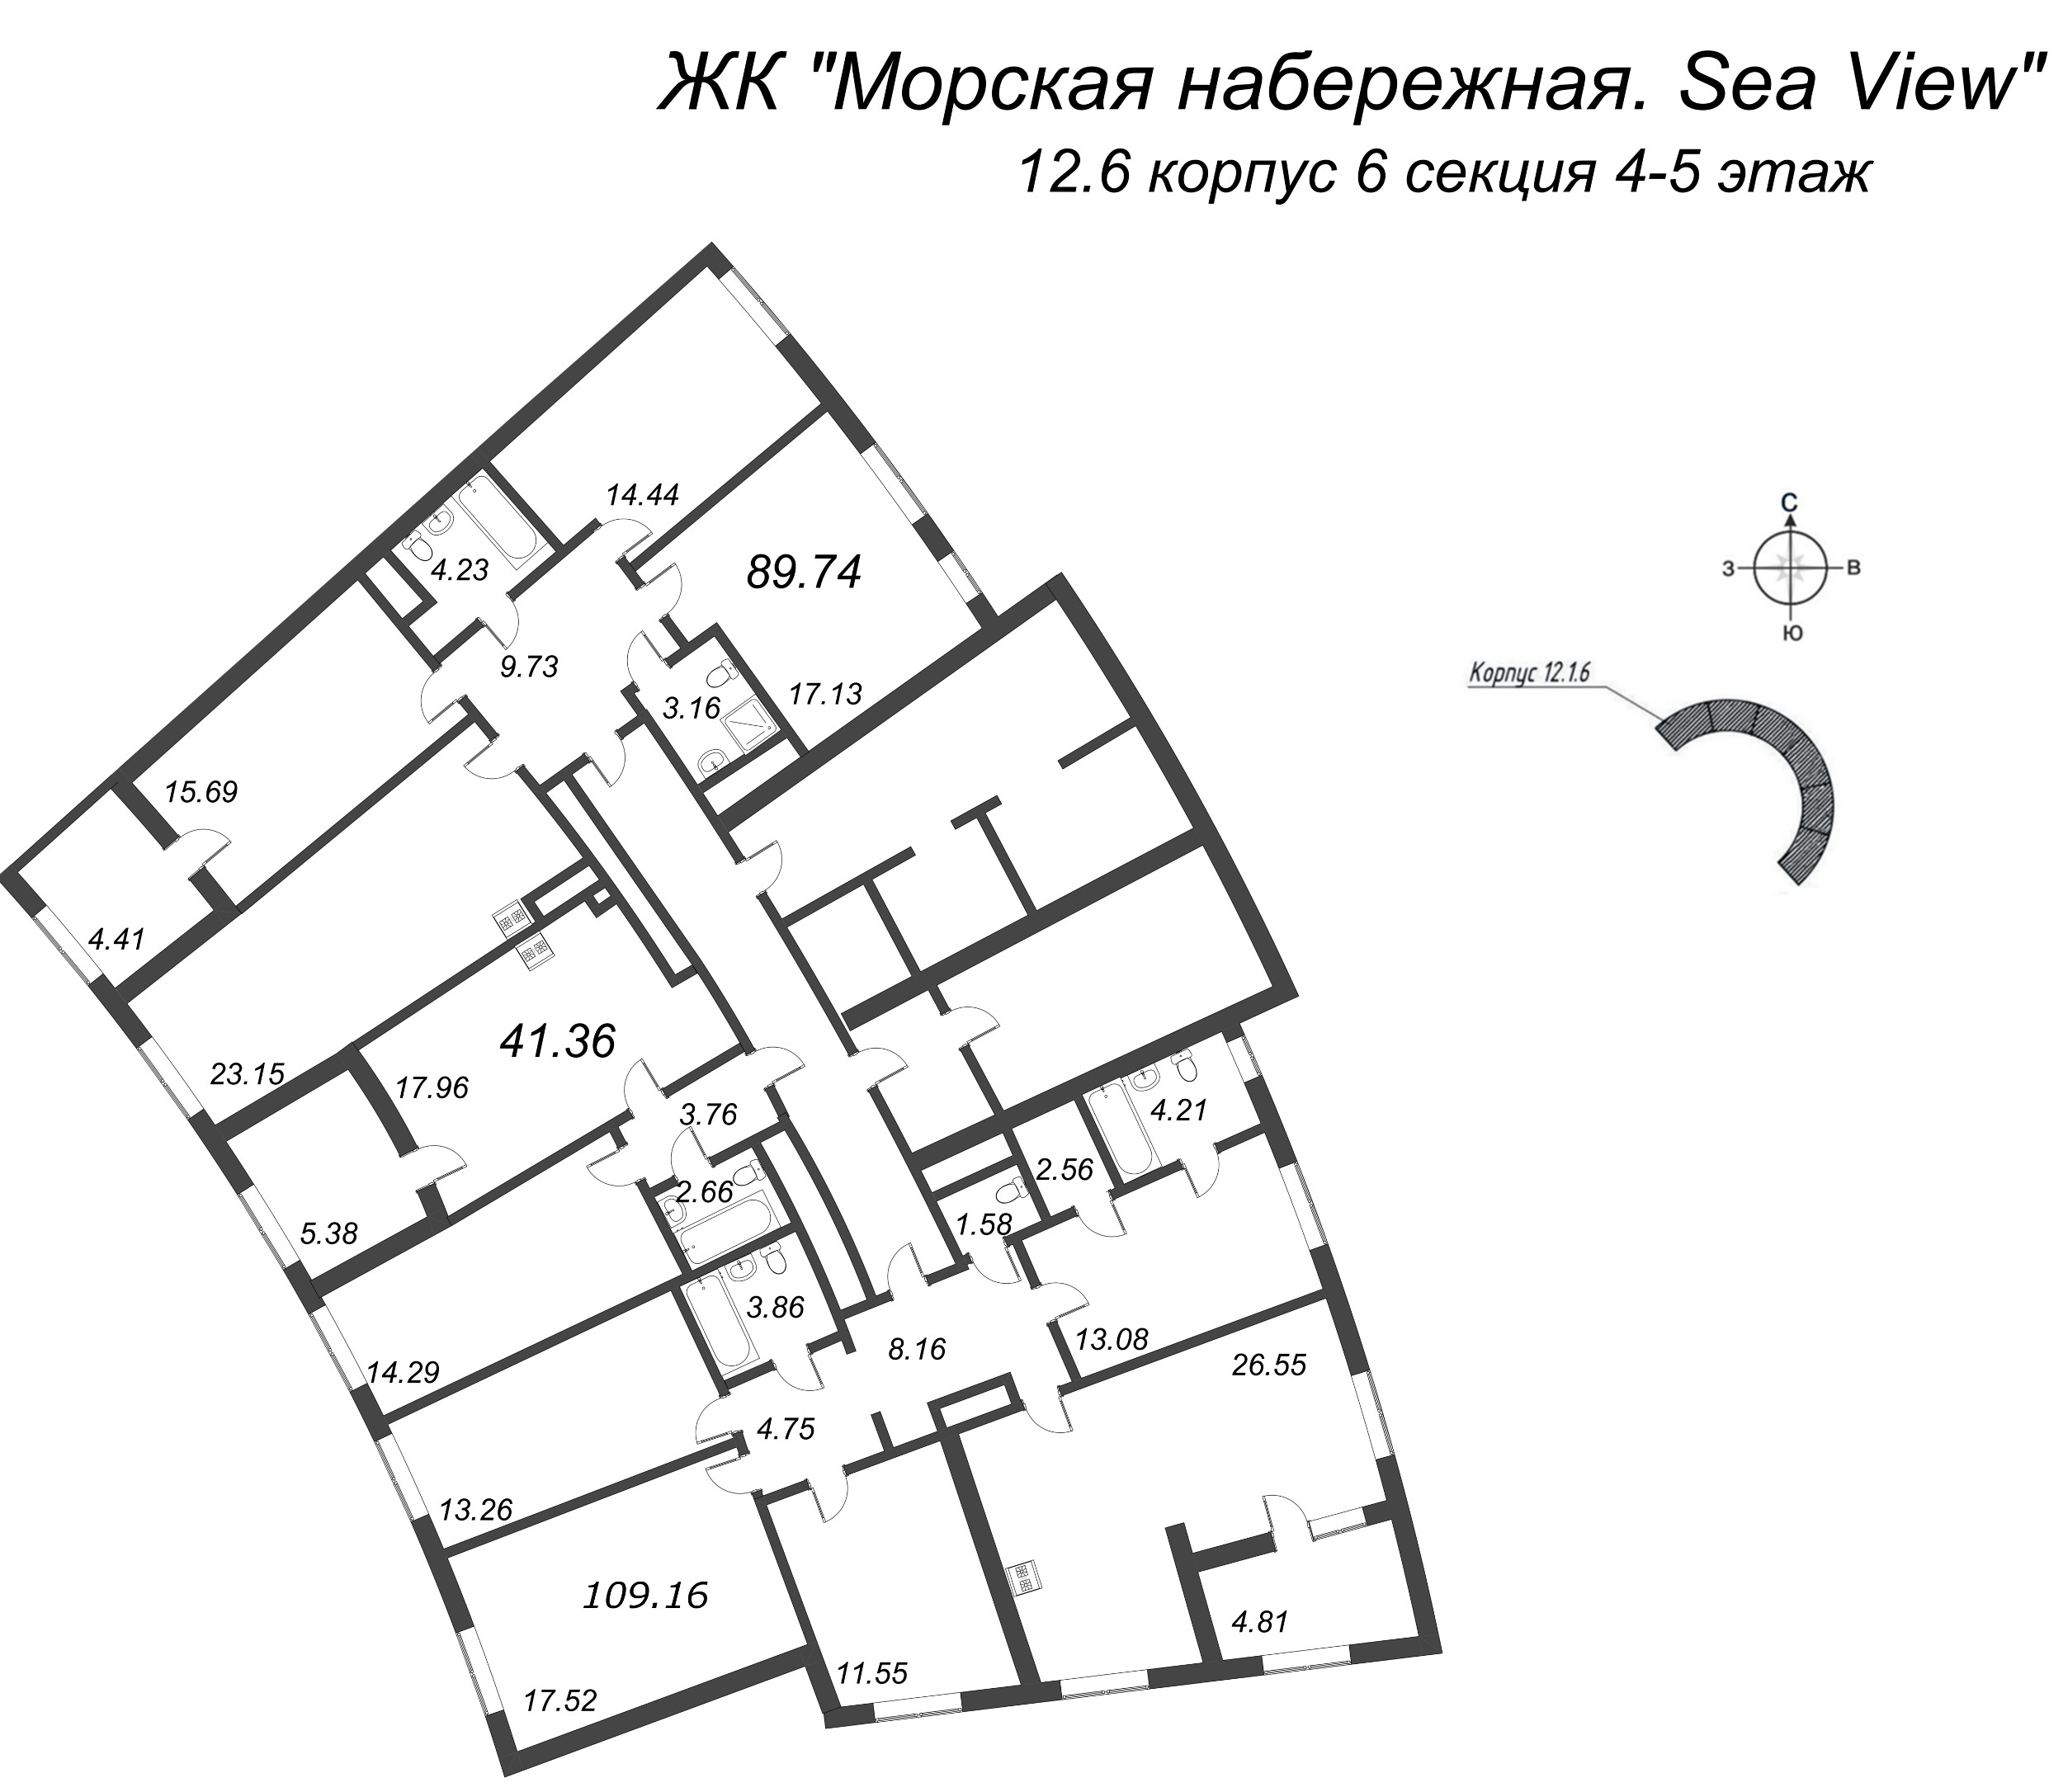 5-комнатная (Евро) квартира, 109.16 м² в ЖК "Морская набережная. SeaView" - планировка этажа